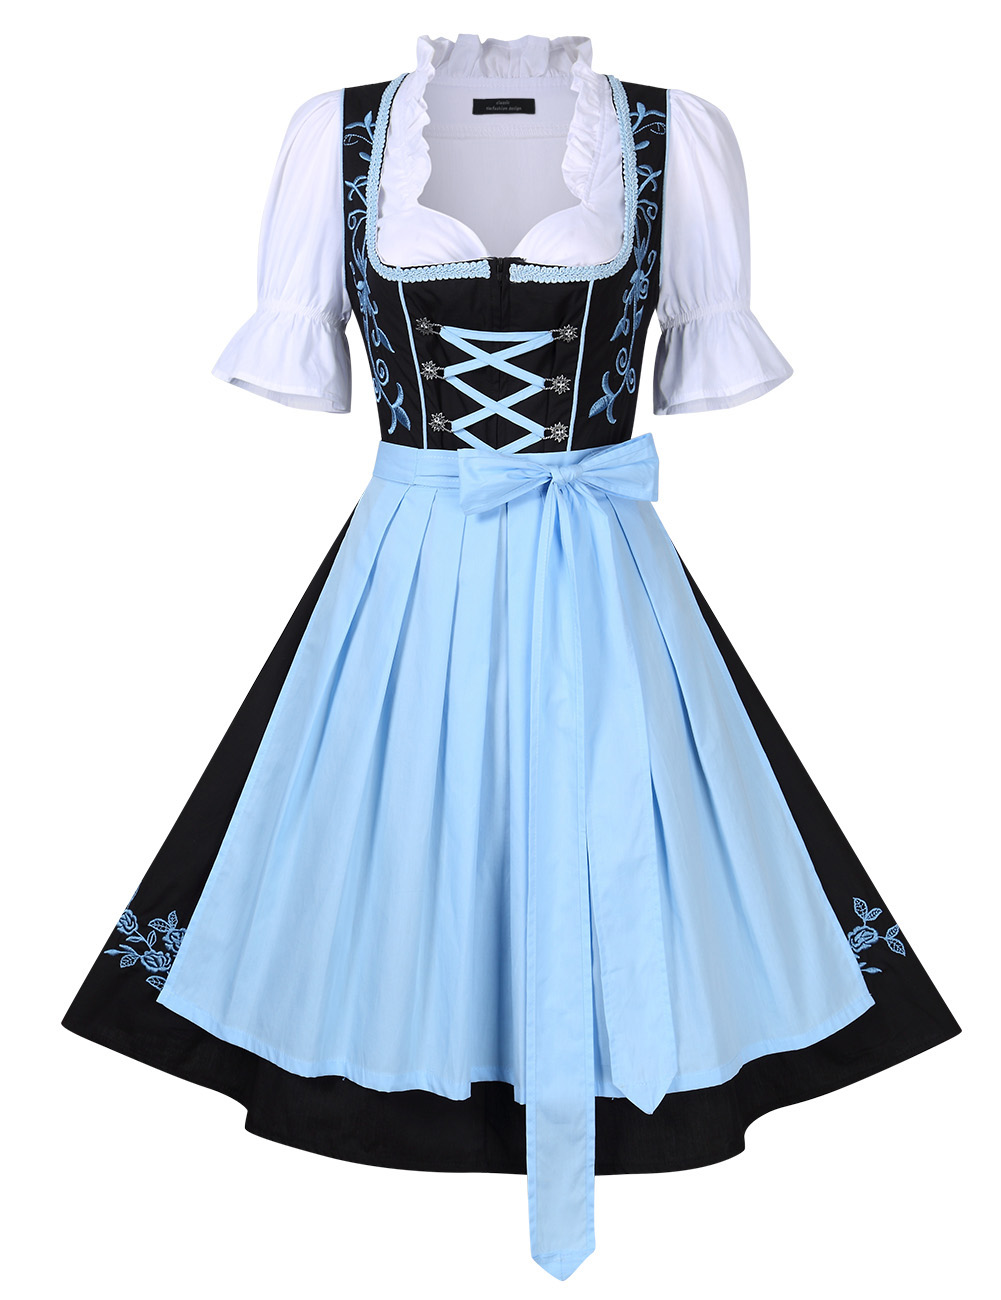 Frauen Dirndl Oktoberfest Trachtenkleid Bluse Schürze Klei Zünftige Tracht 34 46 Ebay